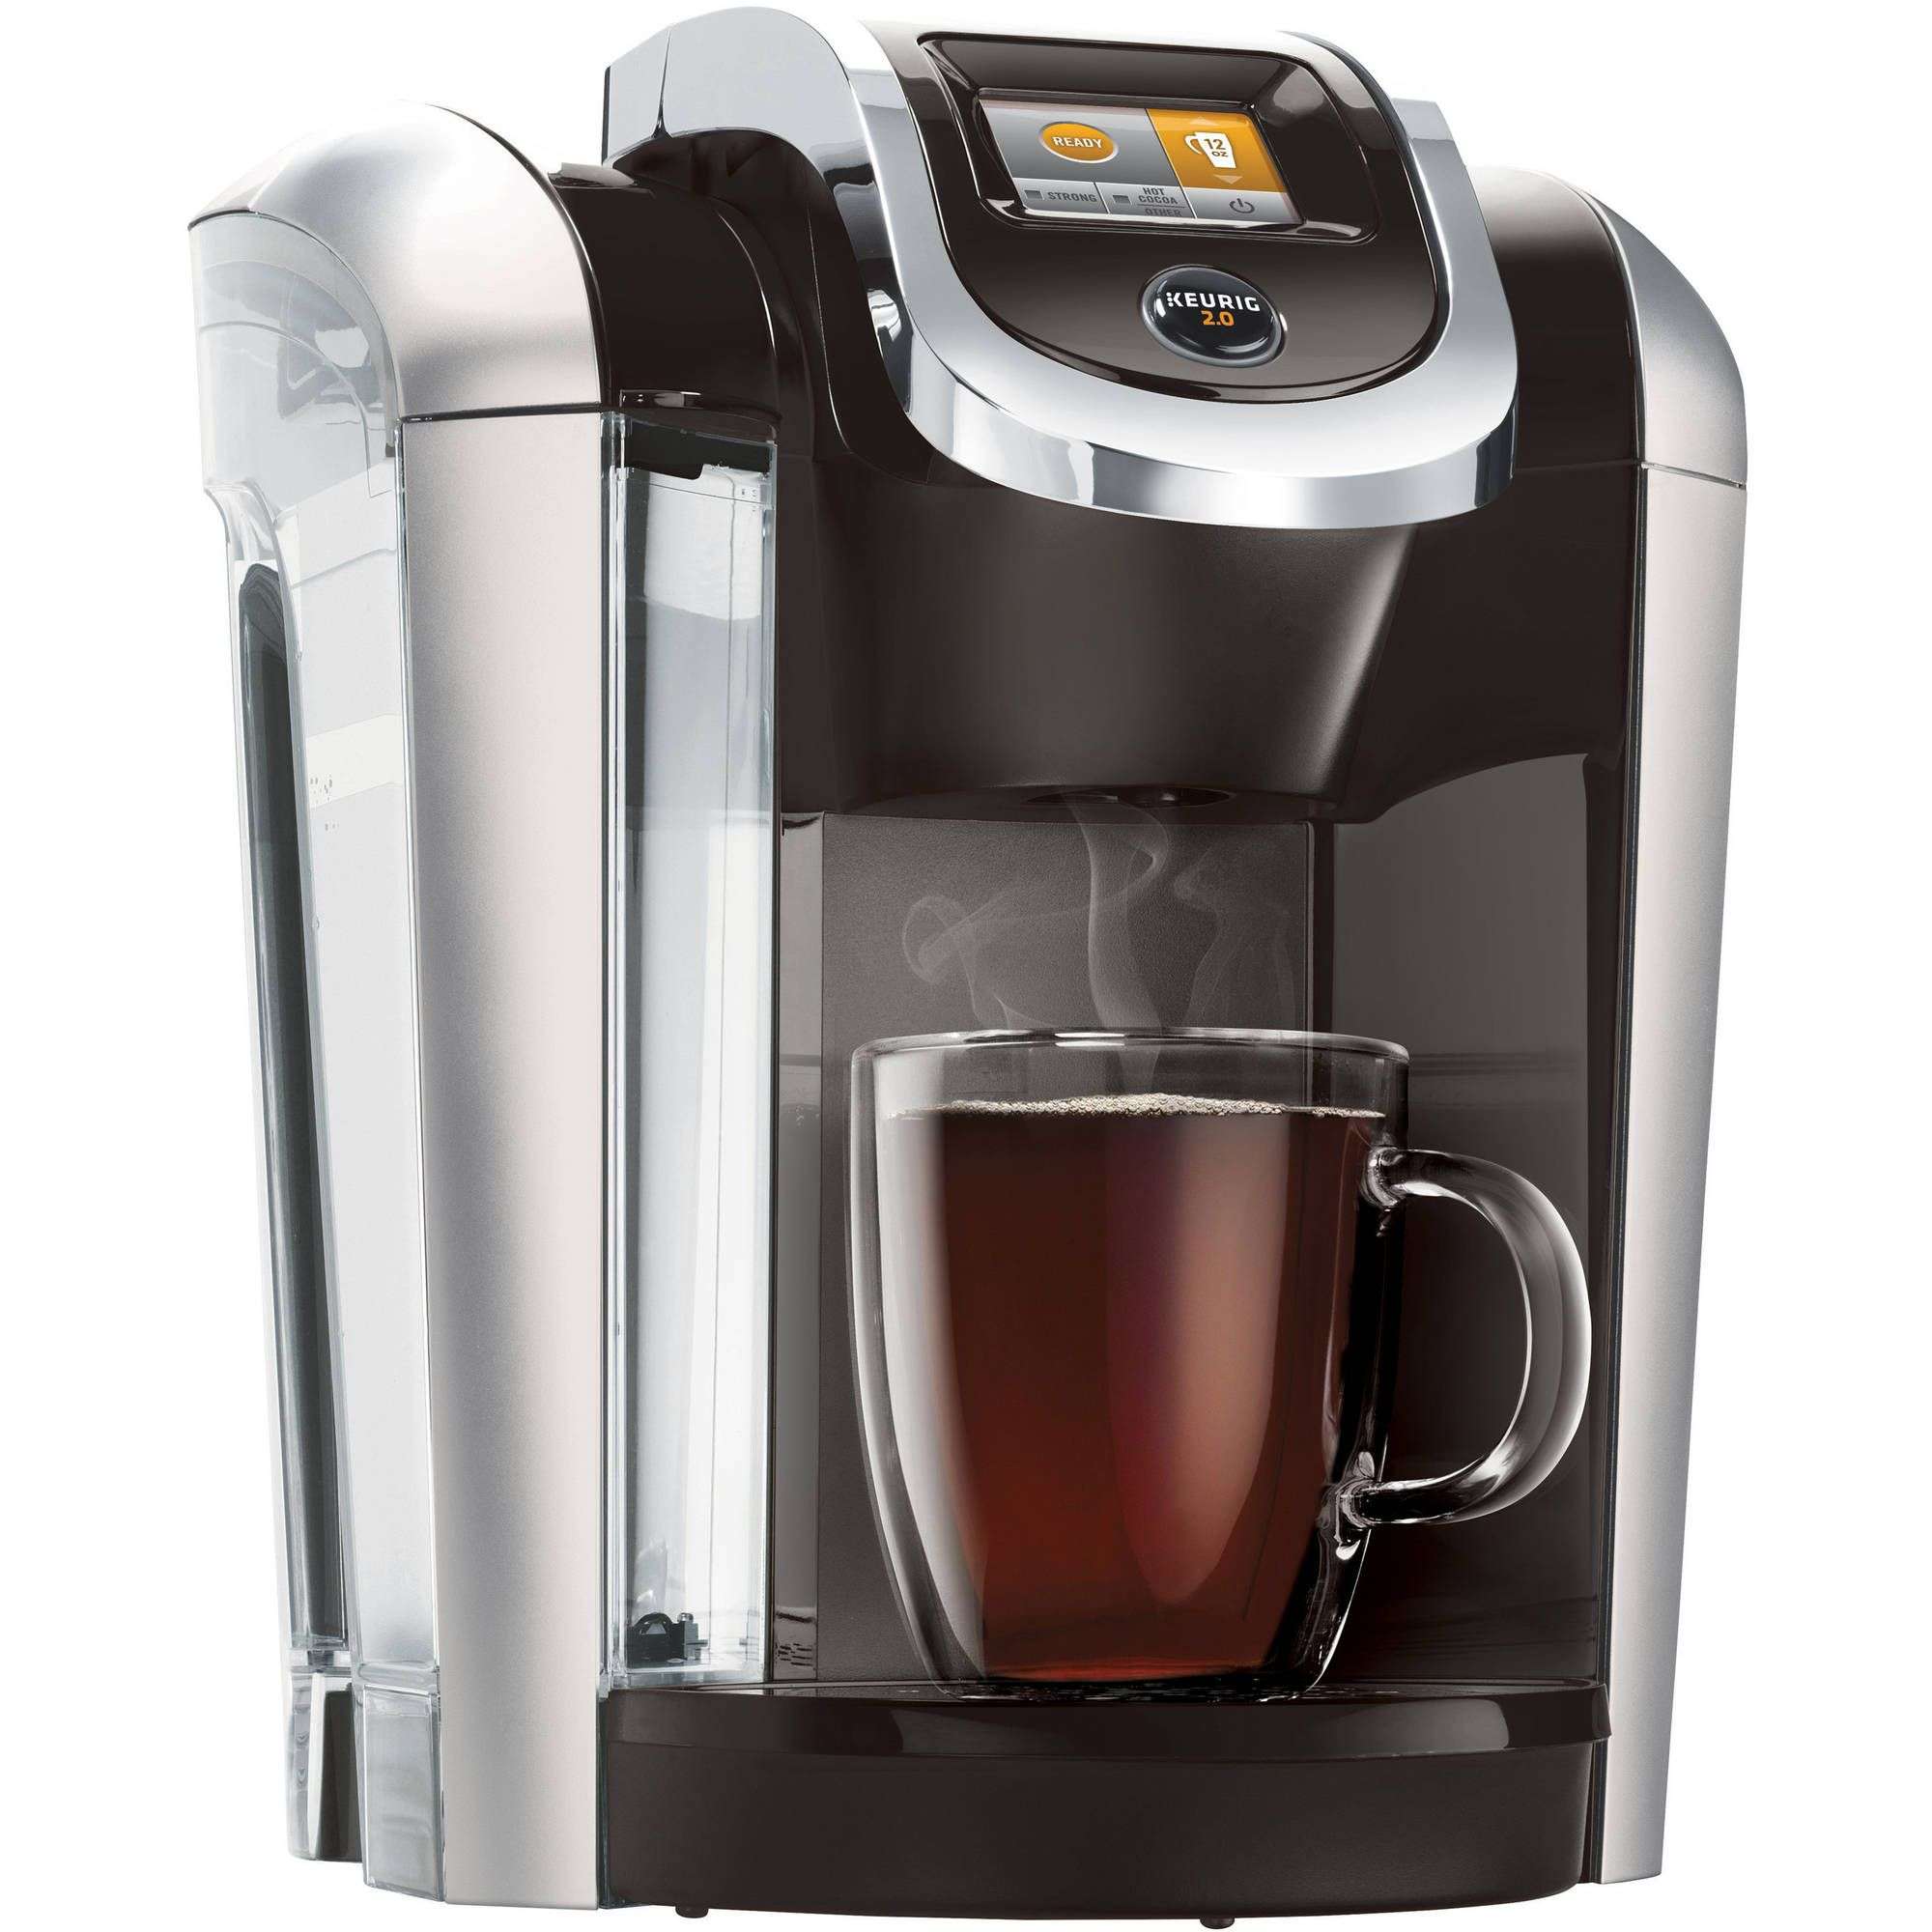 Keurig K425 Coffee Maker